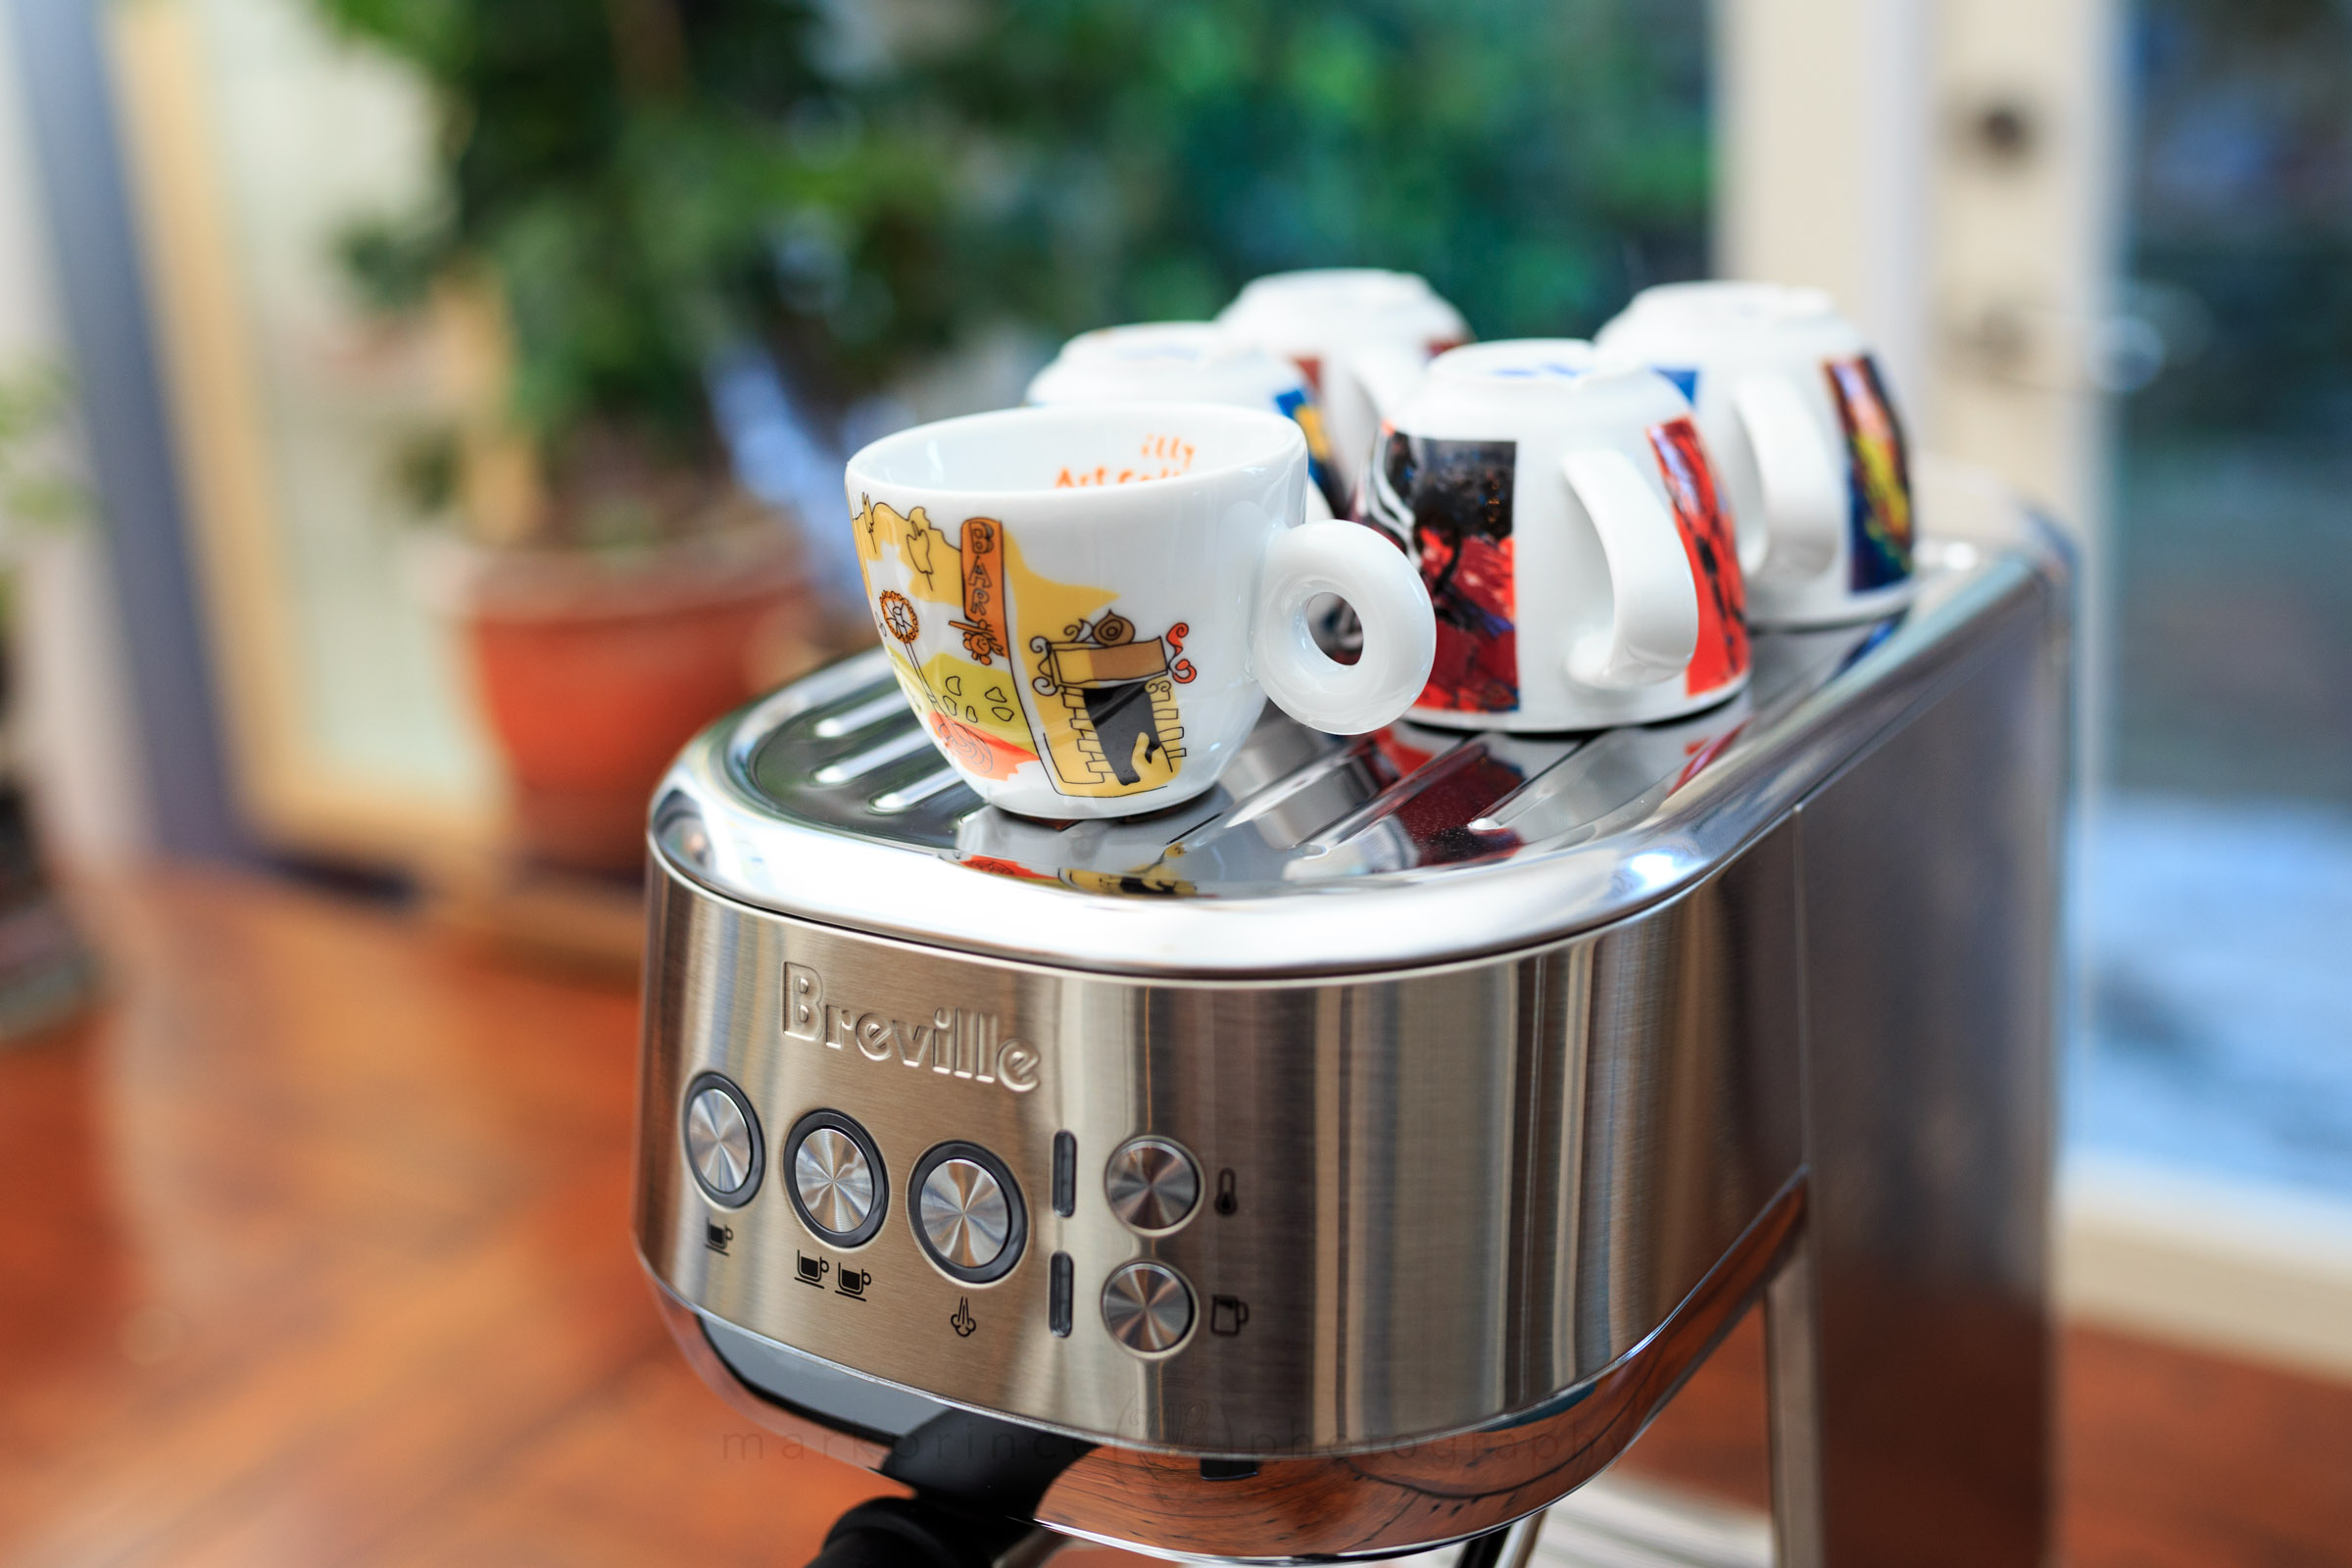 Breville the Bambino Plus Espresso Machine